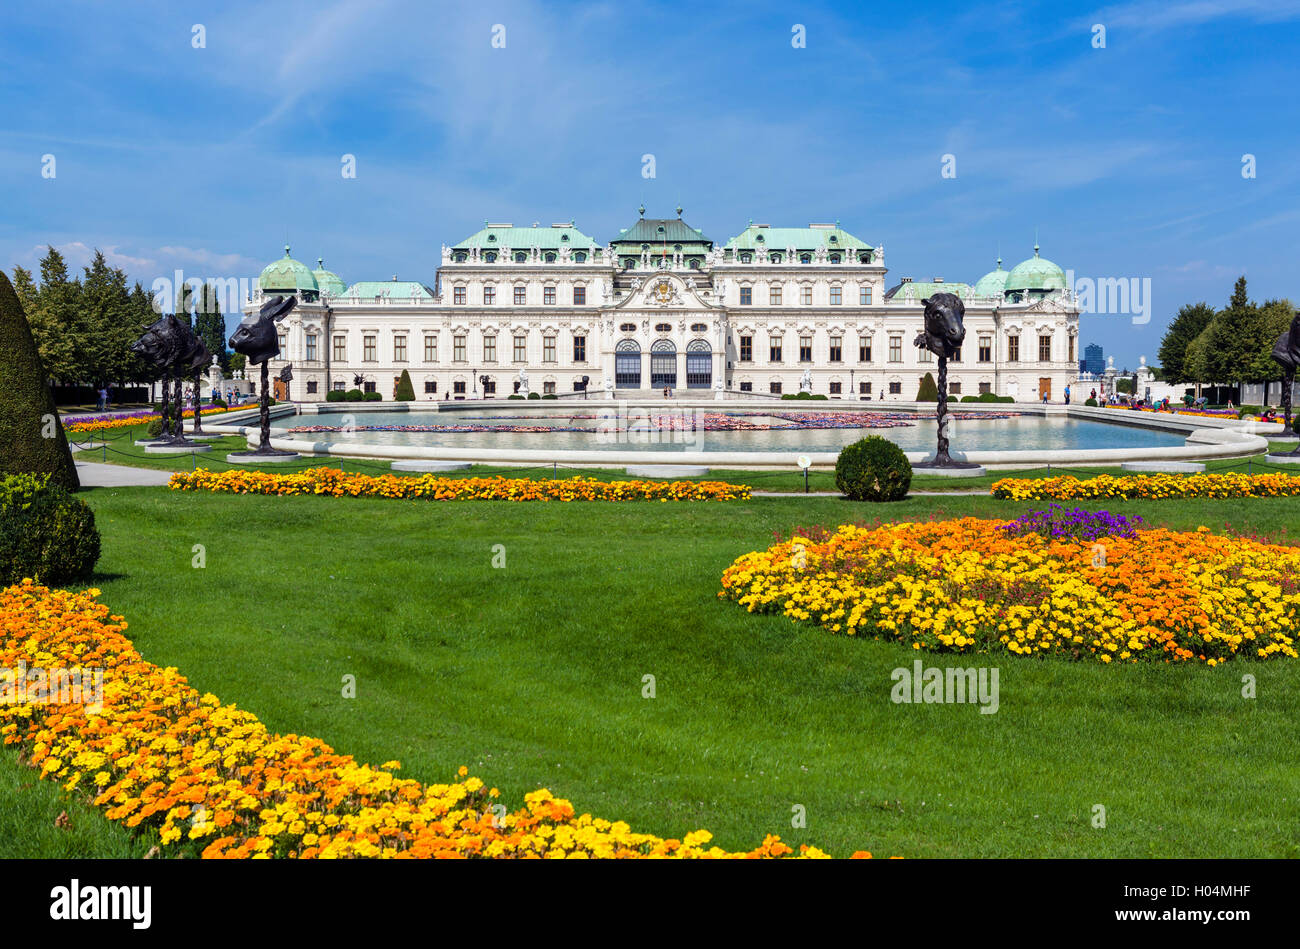 L'Oberes Belvedere, palais d'été du prince Eugène de Savoie, Vienne, Autriche Banque D'Images